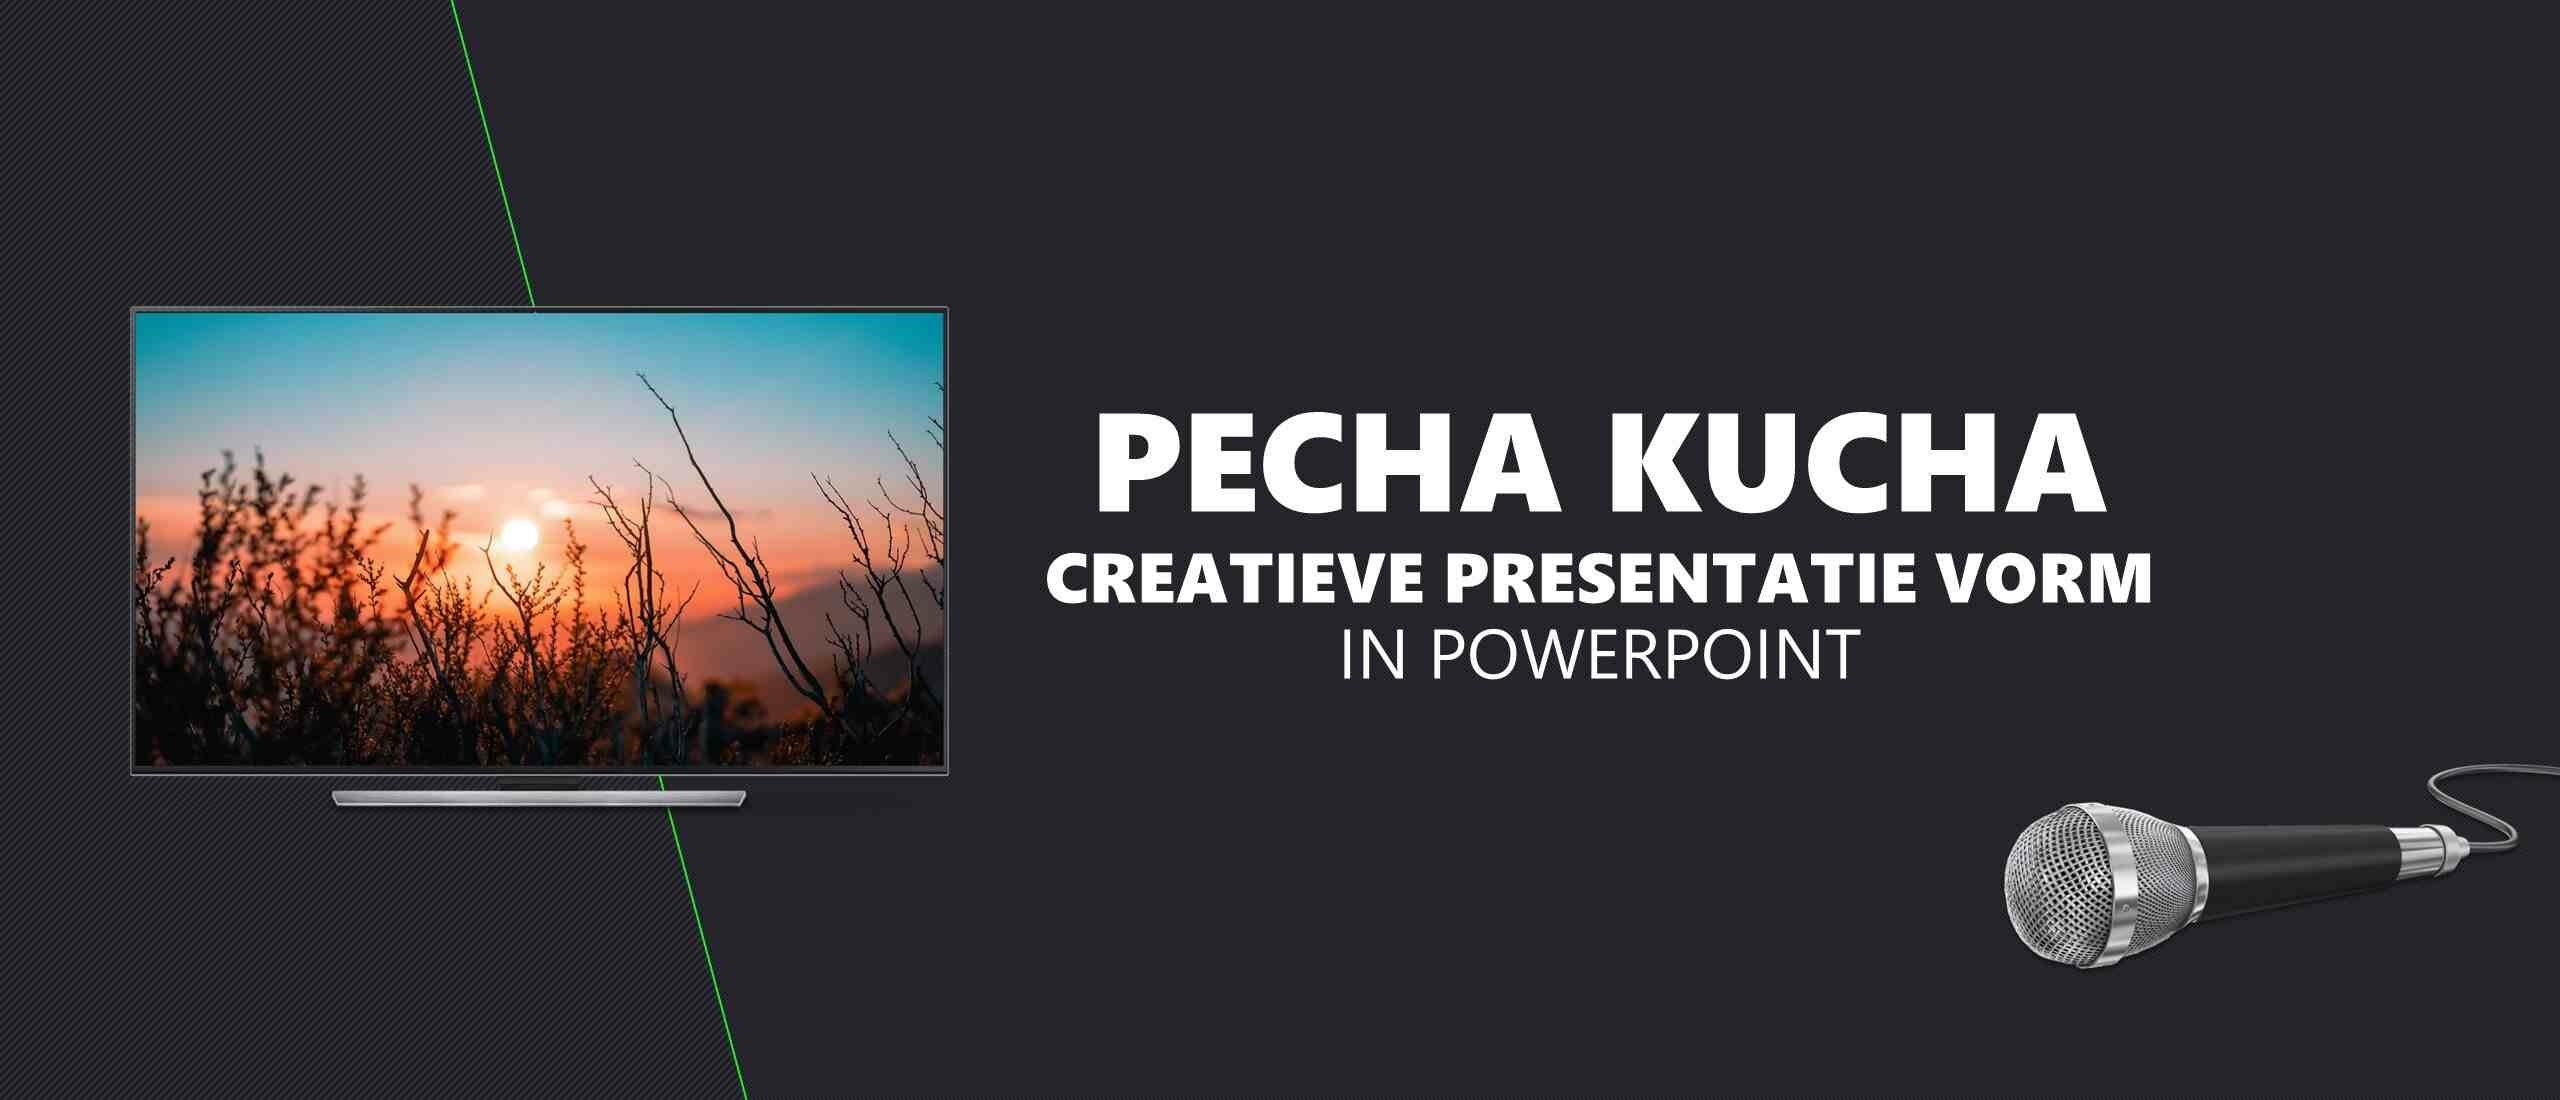 Pecha Kucha presentatie in PowerPoint: creatieve vorm van presenteren [incl. GRATIS SJABLOON]